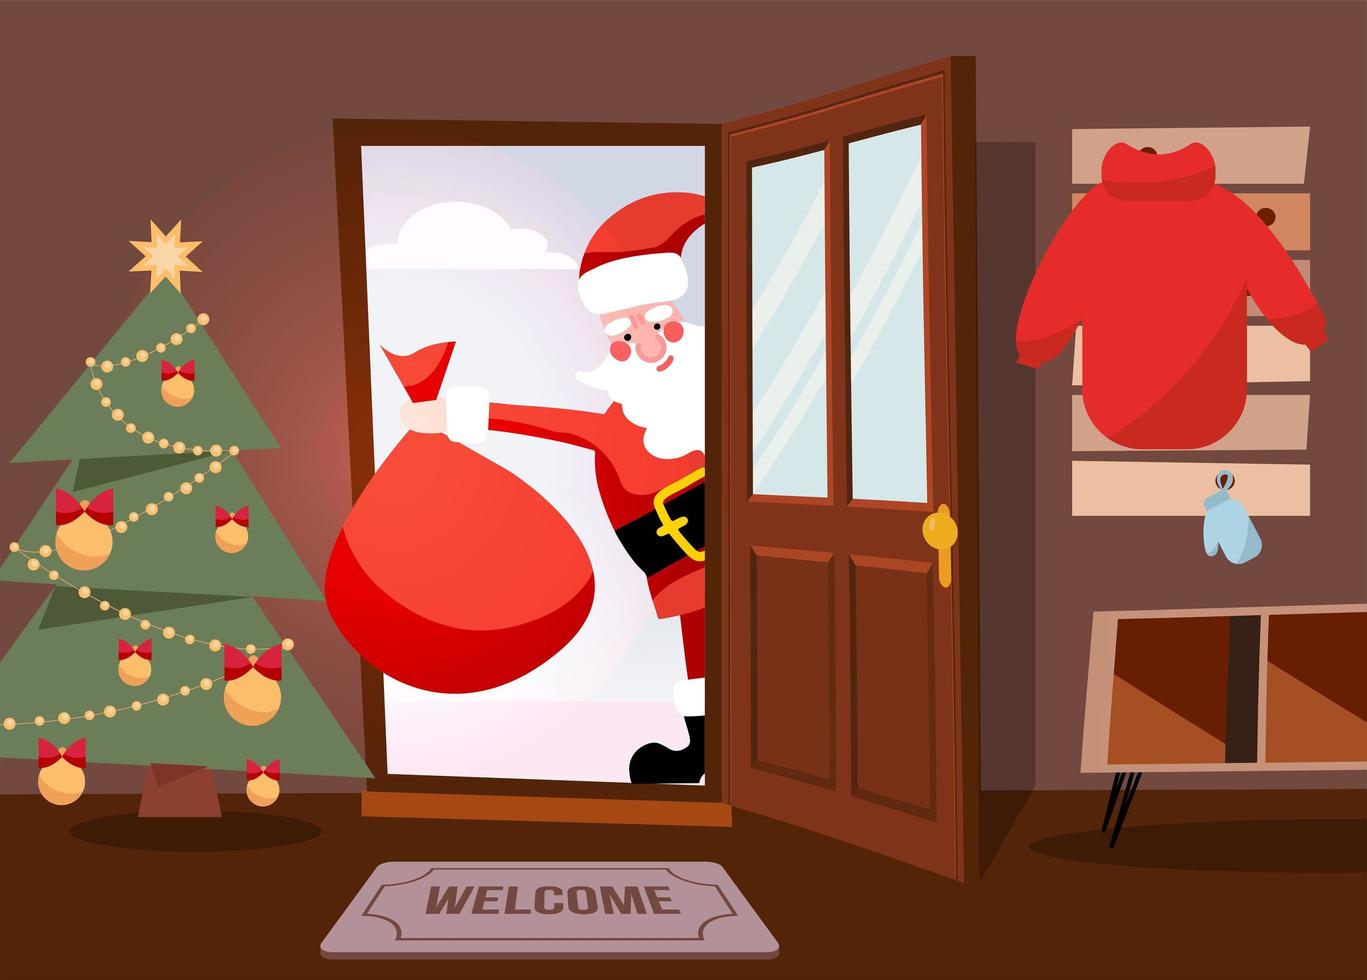 papai noel olhando pela porta e voltando para casa com saco de presente vermelho. feliz natal ilustração plana dos desenhos animados de vetor. papai noel entra na porta do corredor. vetor